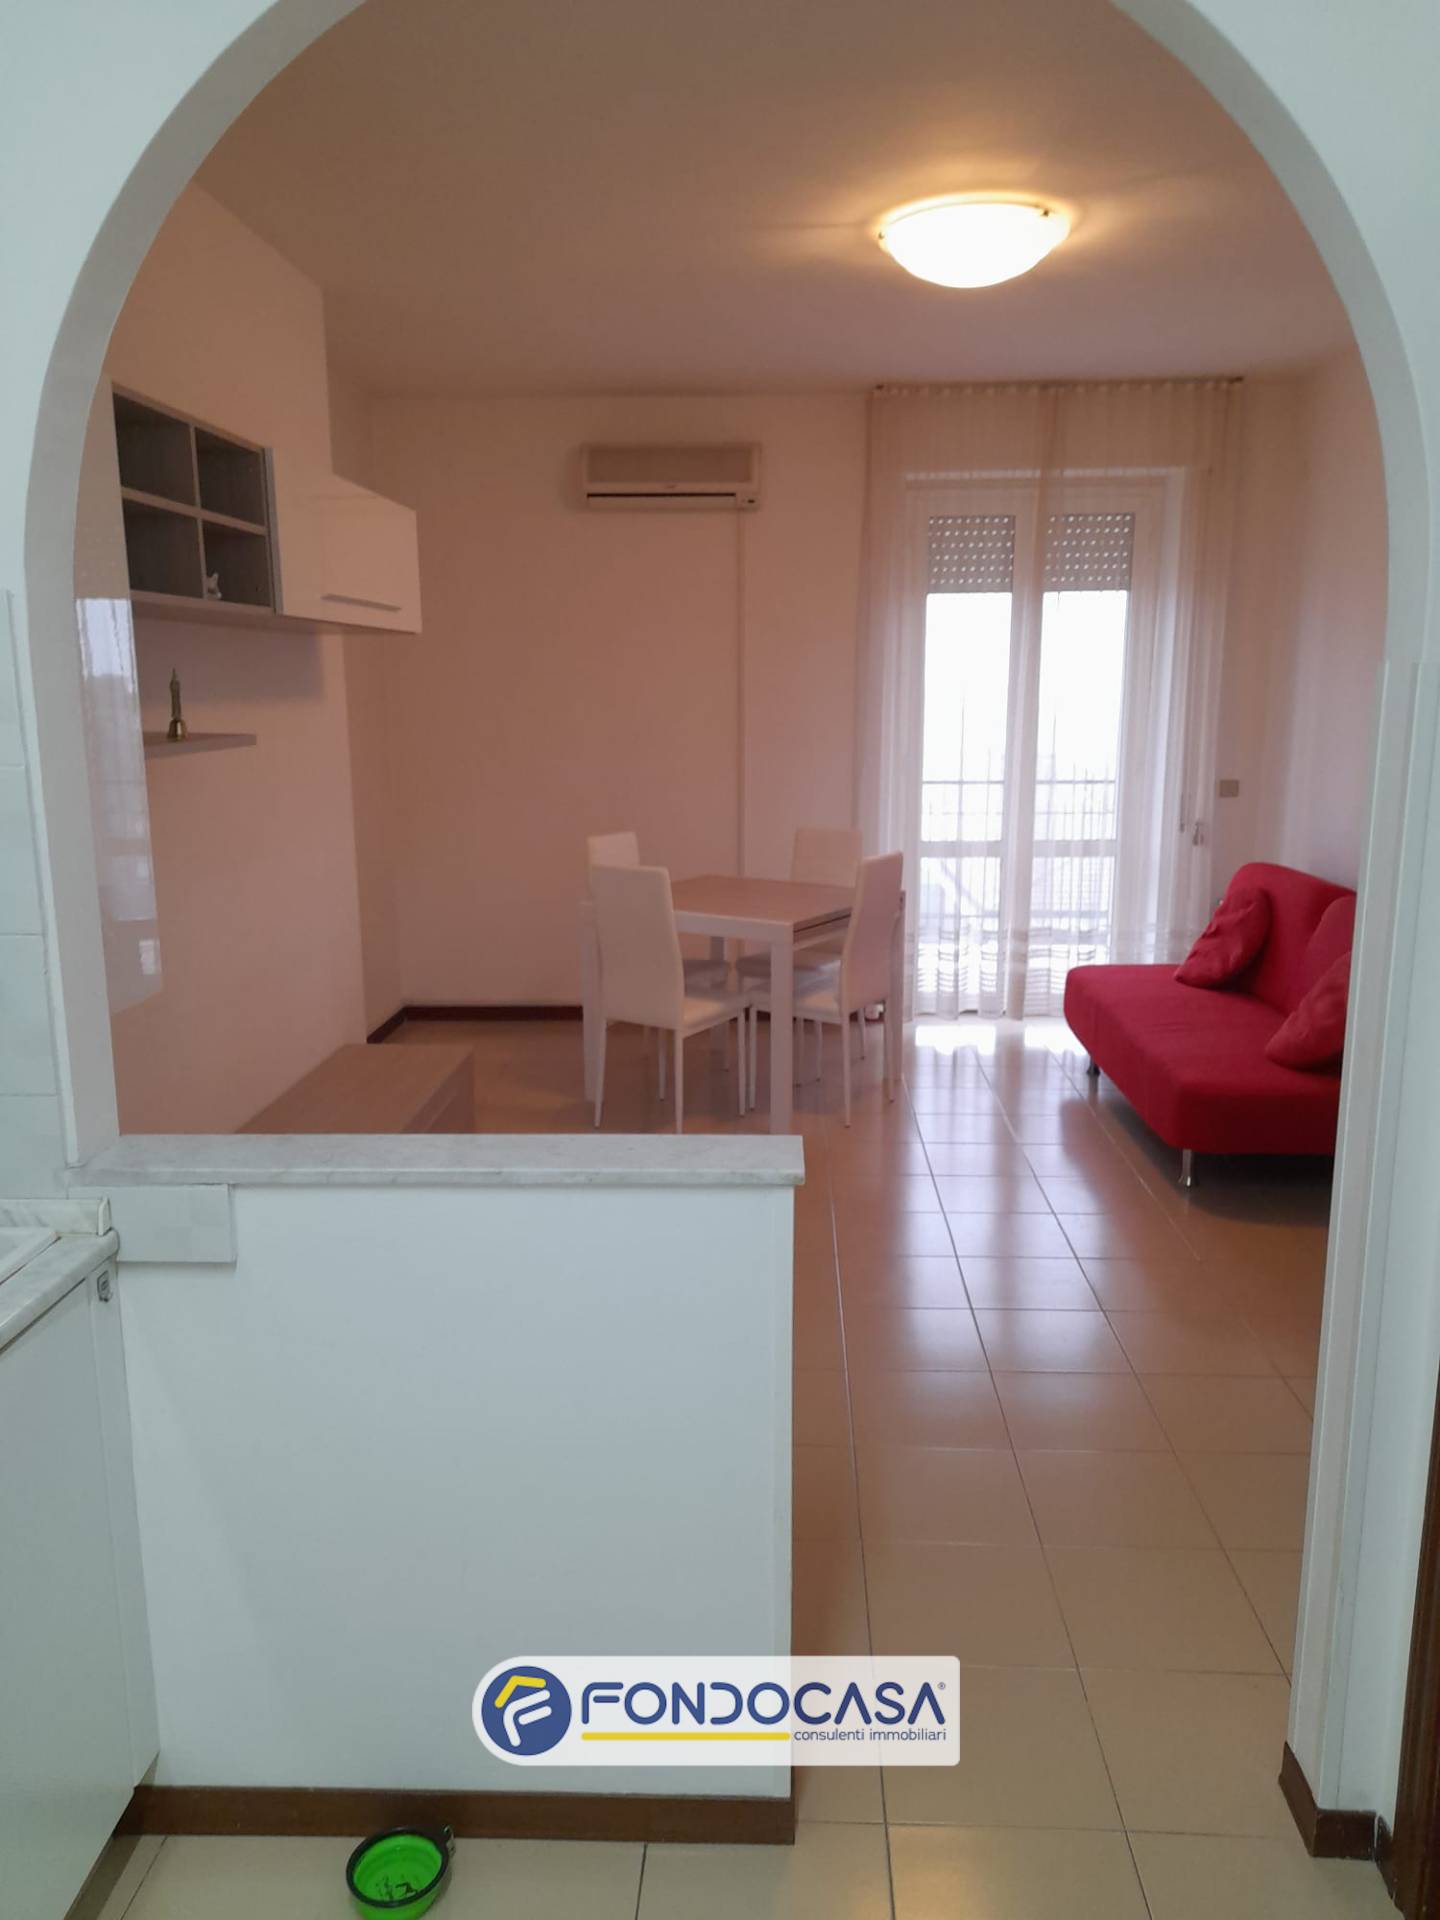 Appartamento in affitto a San Benedetto del Tronto, 5 locali, zona Località: PortodAscoli, prezzo € 1.000 | PortaleAgenzieImmobiliari.it